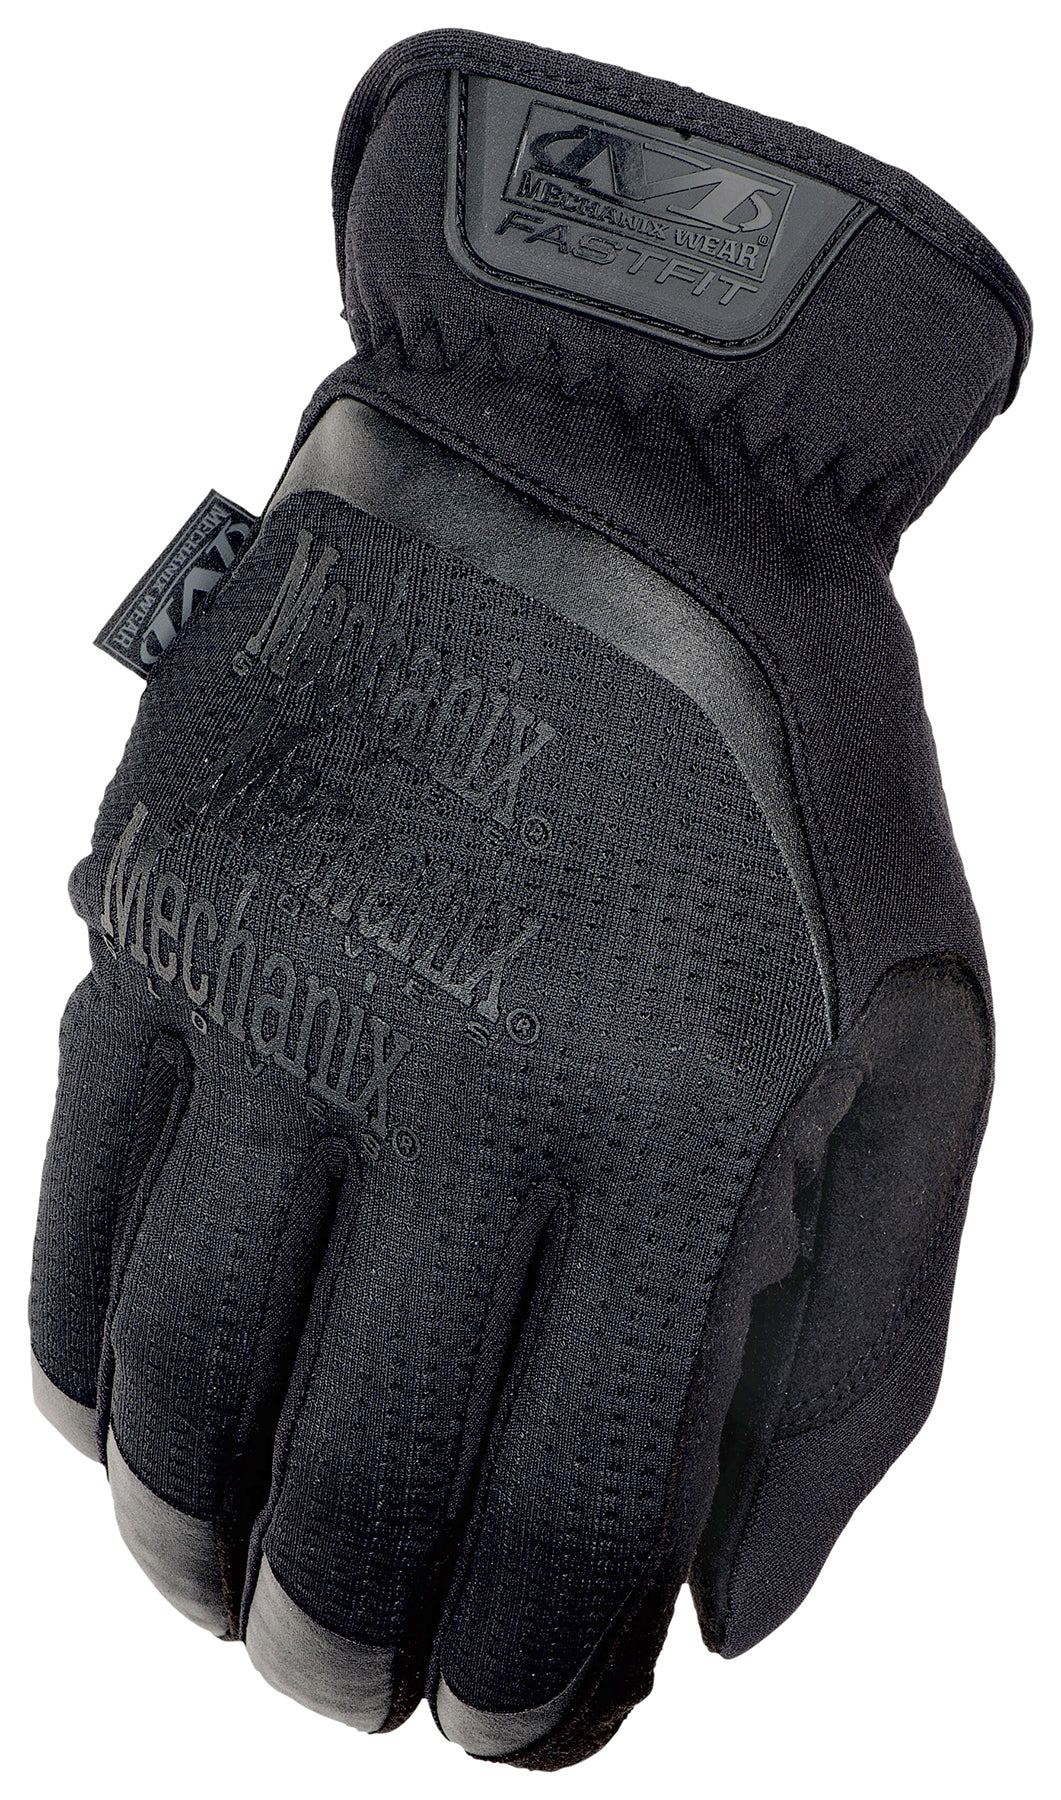 Mechanix Wear, Mechanix Wear FastFit Full Finger Tactical Gloves Black XL 1 paire